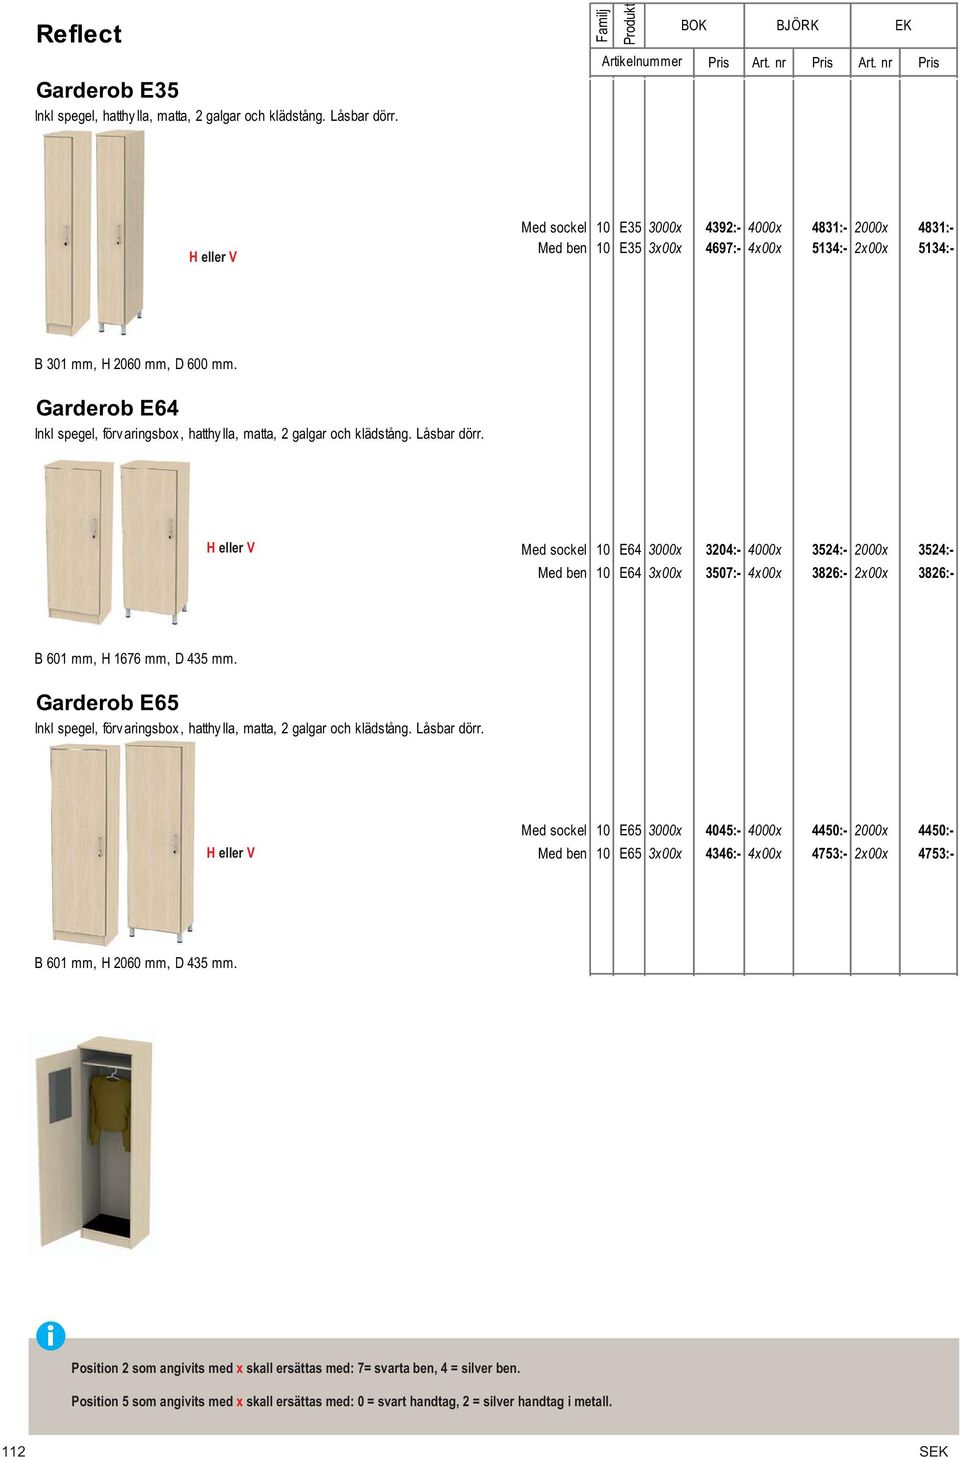 Garderob E64 Inkl spegel, förv aringsbox, hatthy lla, matta, 2 galgar och klädstång. Låsbar dörr.